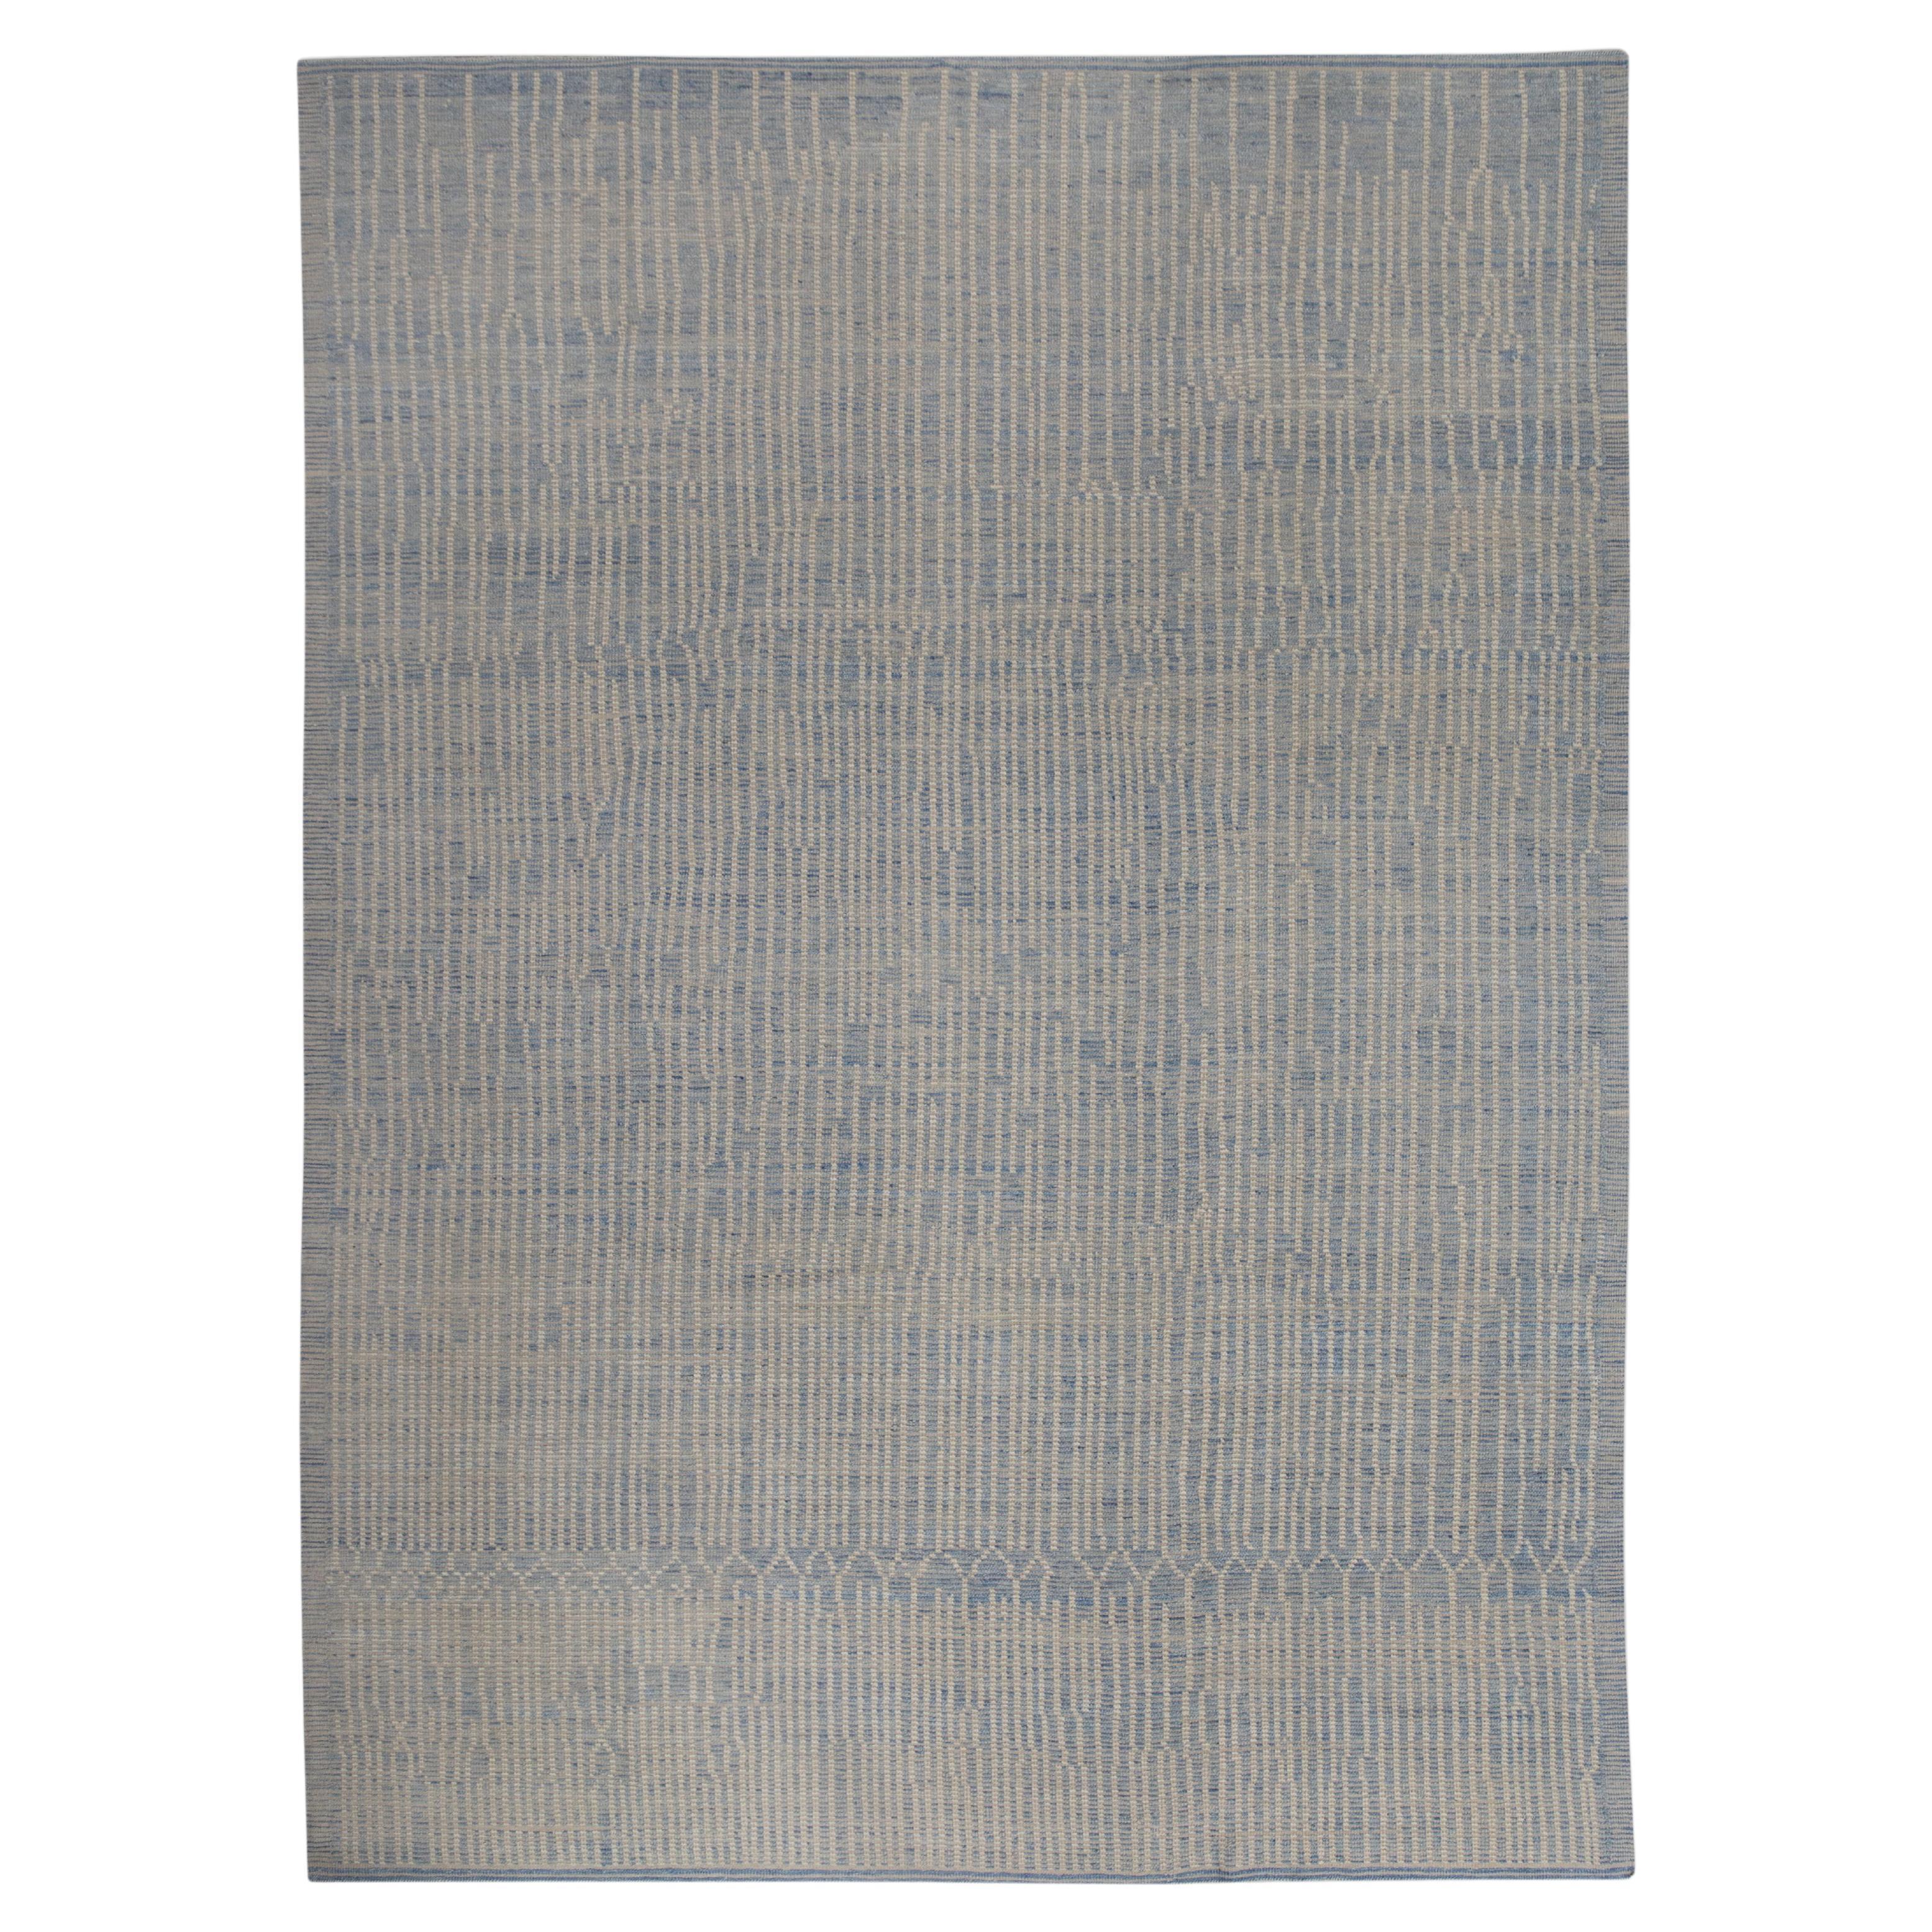  Handmade Wool Tulu Rug in Geometric Design 10' x 13'10"